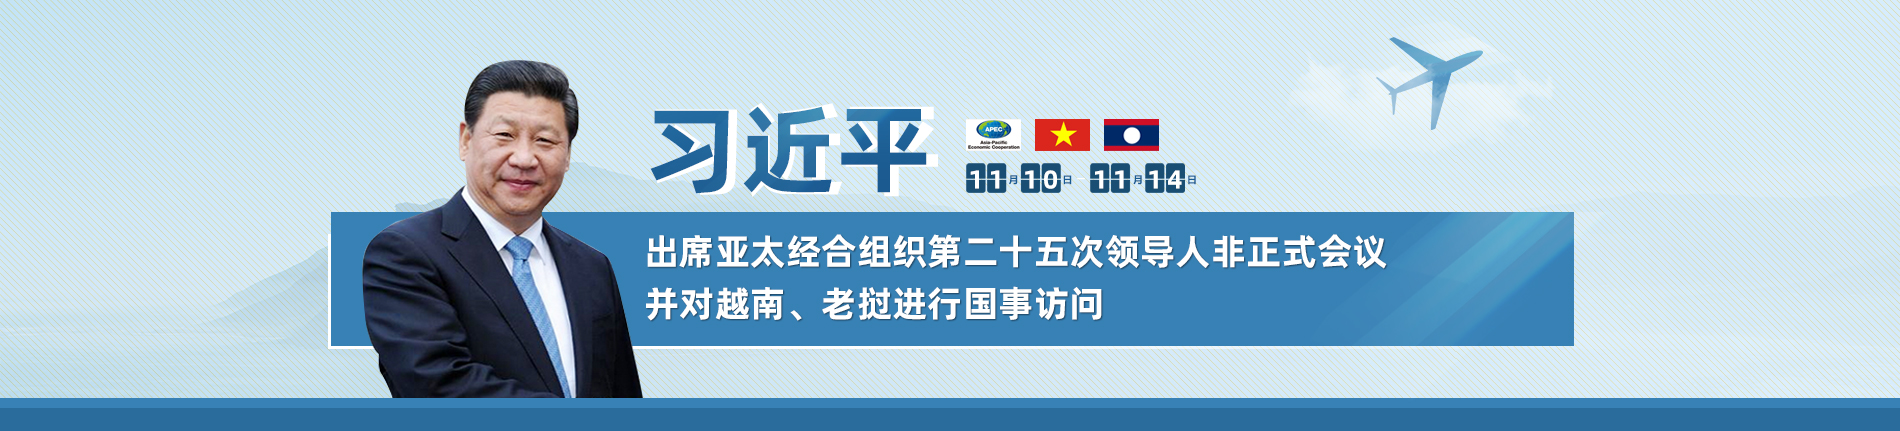 习近平出席亚太经合组织第二十五次领导人非正式会议